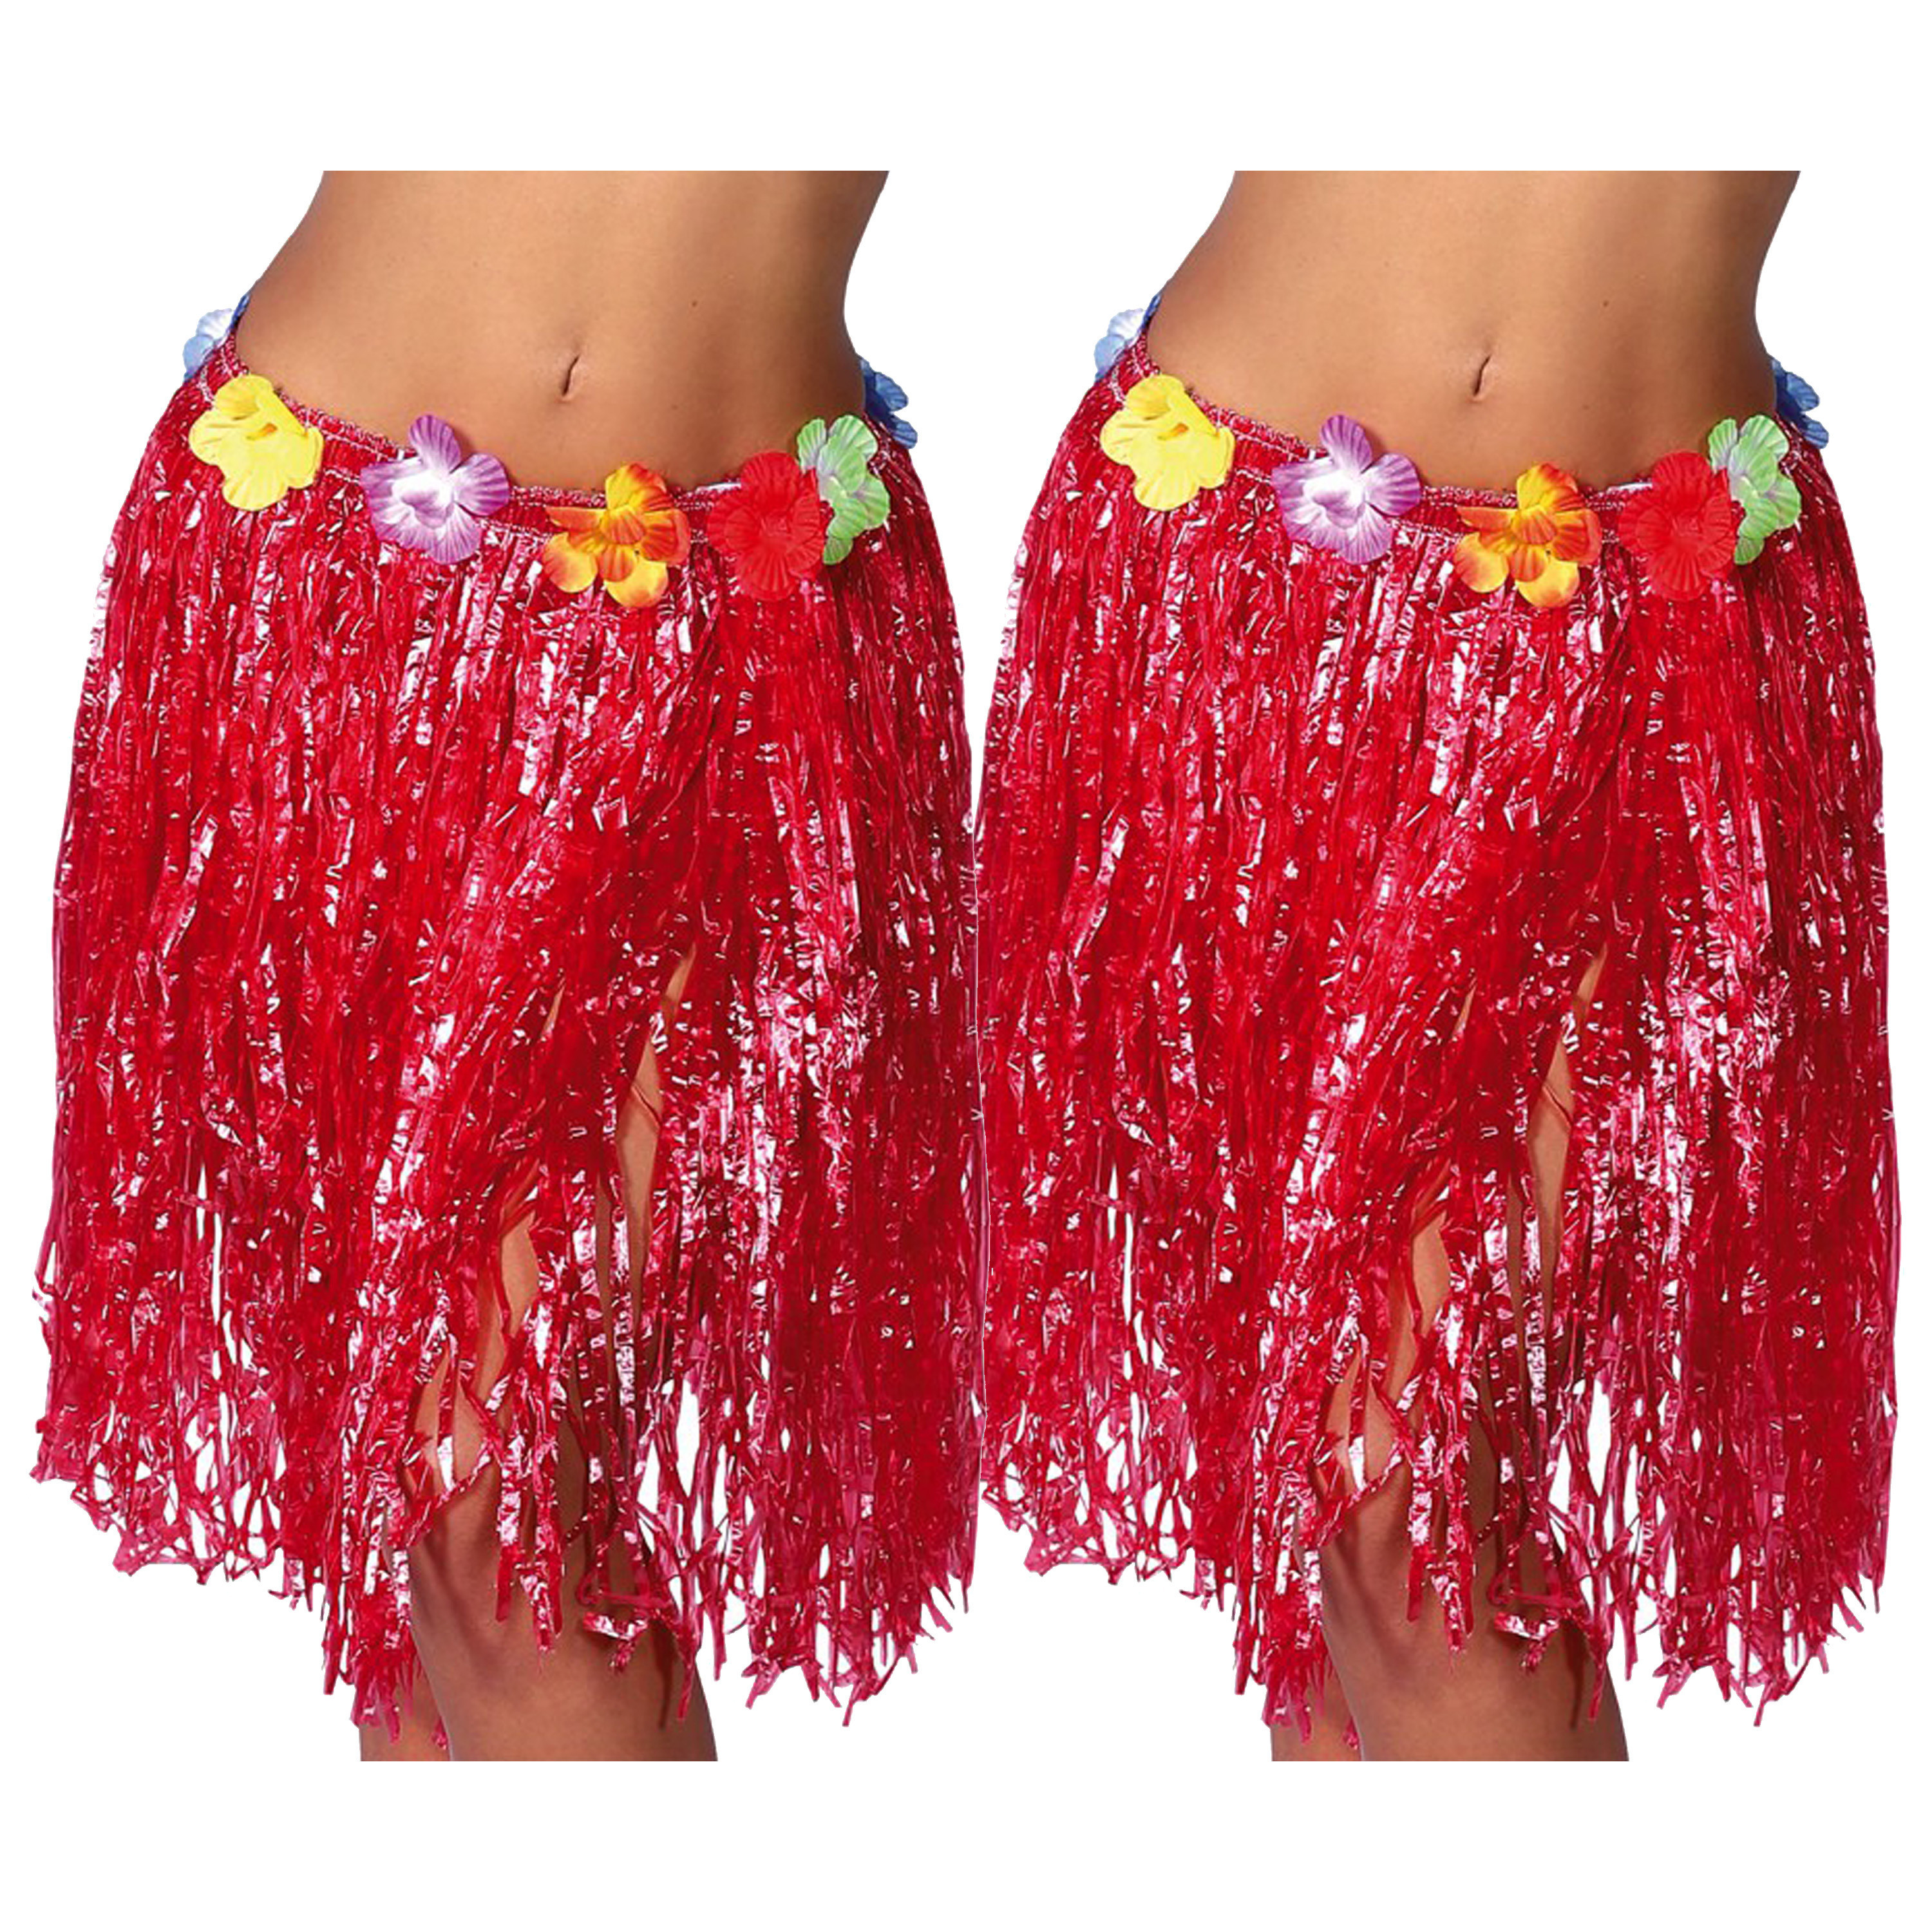 Hawaii verkleed rokje - 2x - voor volwassenen - rood - 50 cm - rieten hoela rokje - tropisch